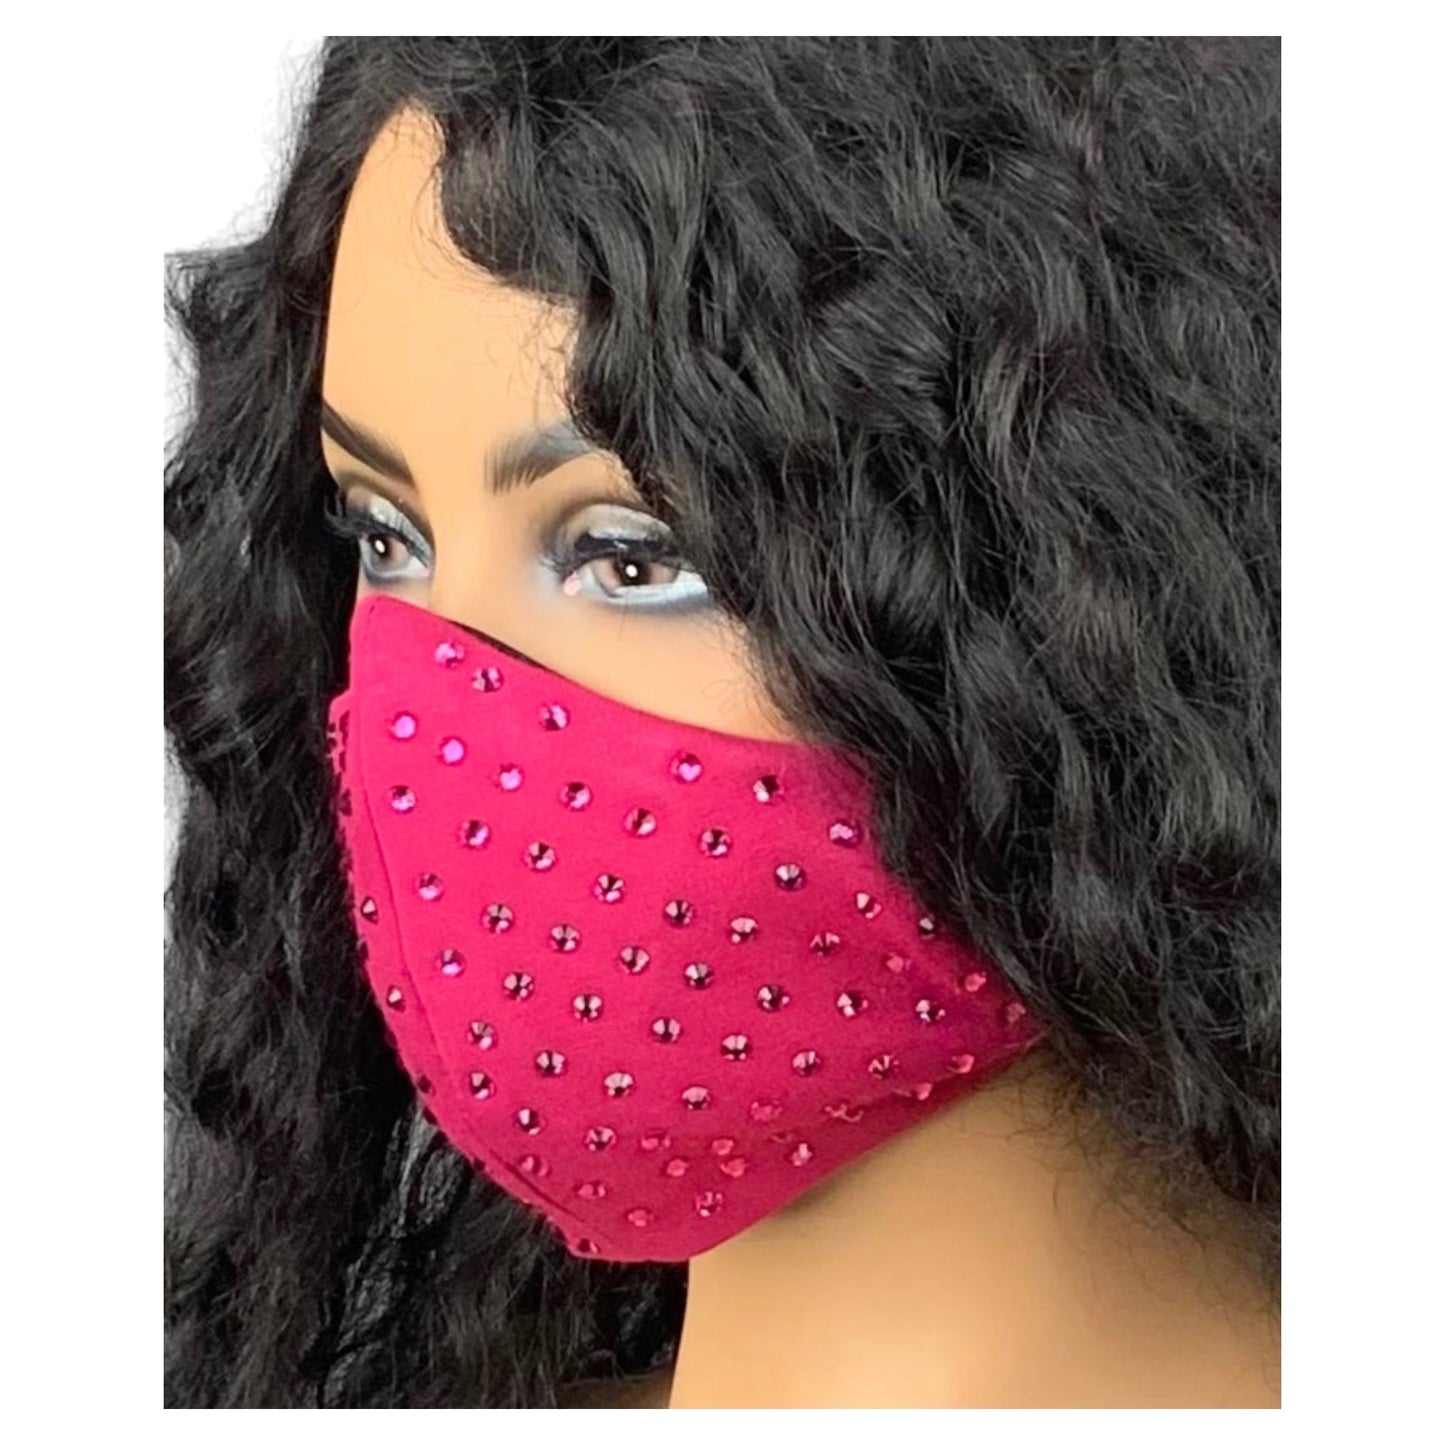 Fuchsia Pink Rhinestone Face Mask